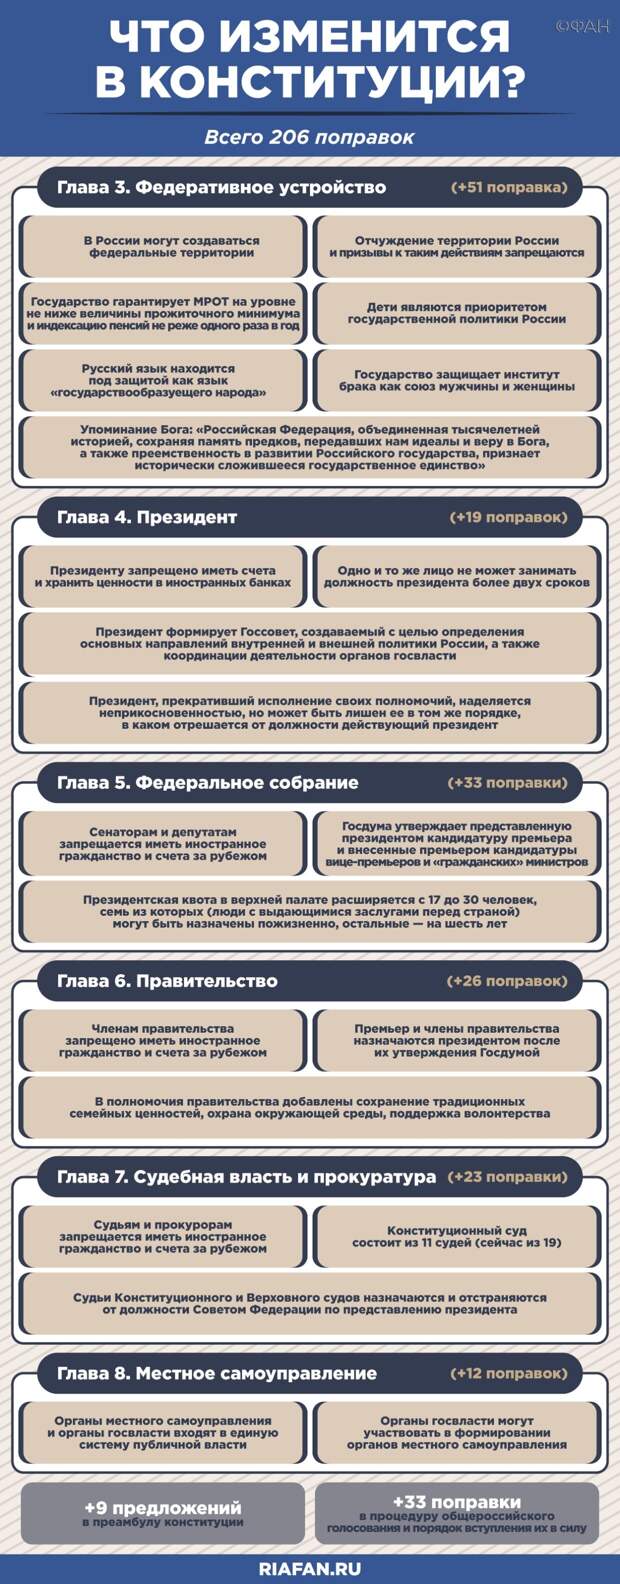 КПРФ опубликовала фейк о возможности «повторного» голосования в Иркутске